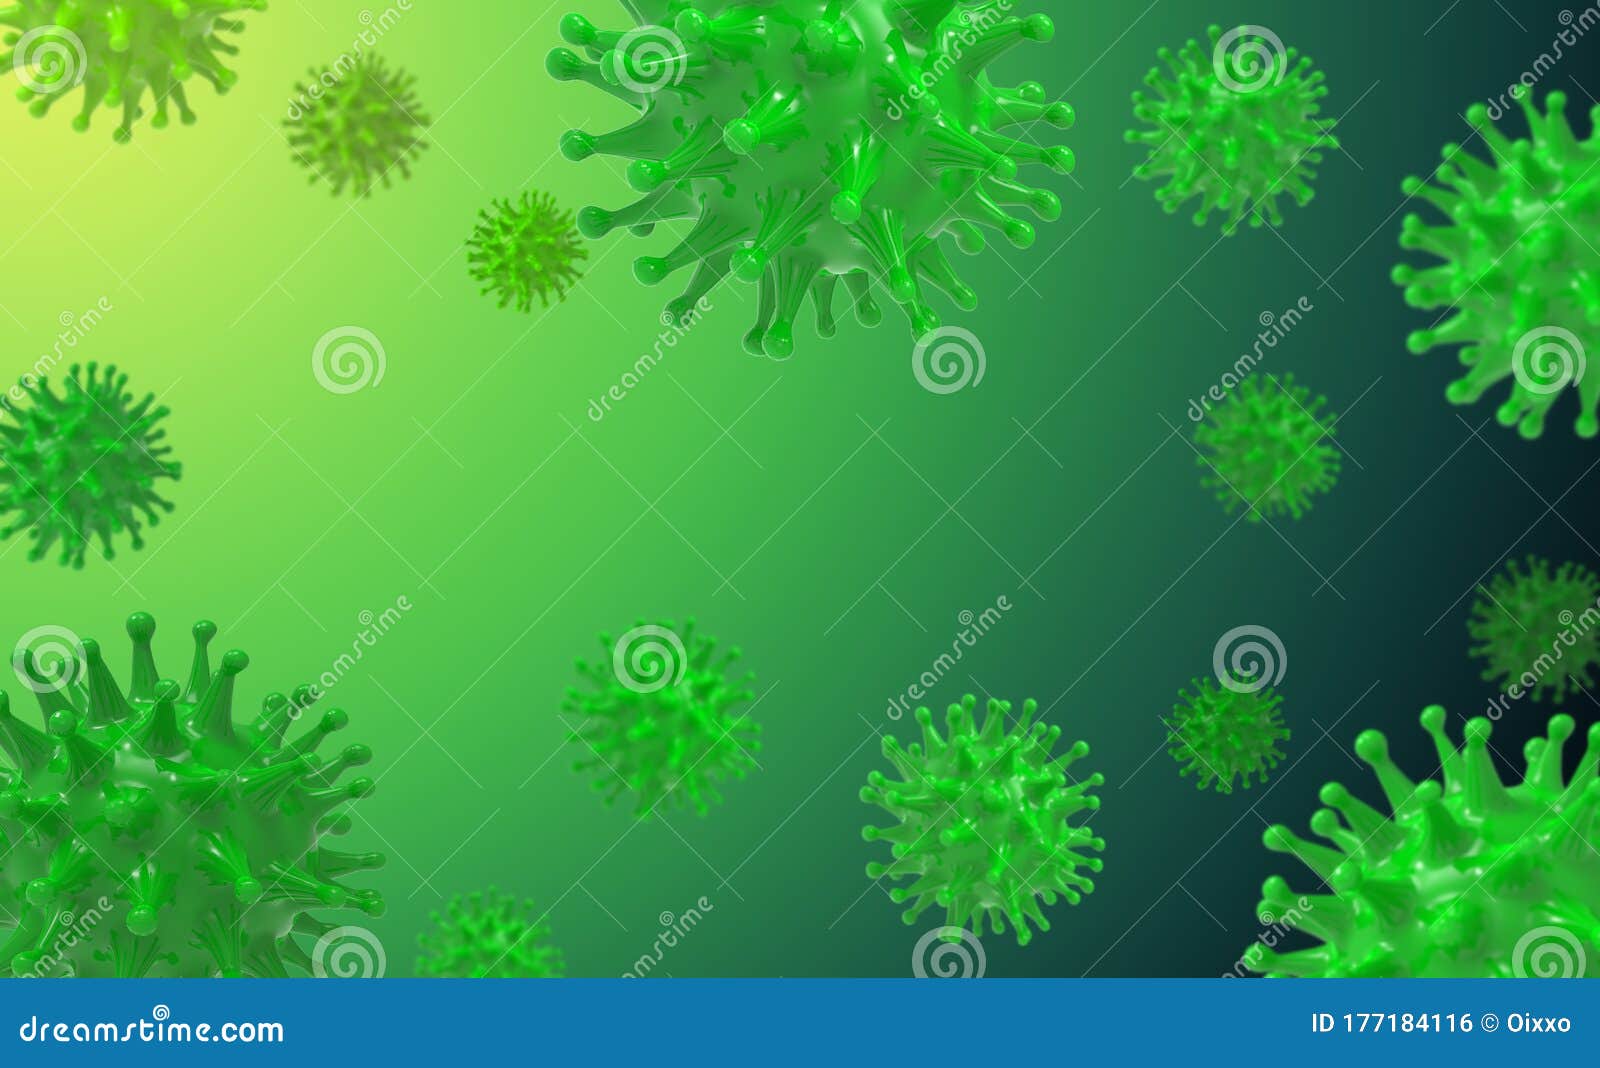 Richard virus. Микроб на зелёном фоне. Вирус зеленый. Зеленые вирусы на прозрачном фоне. Вирус гриппа макет для презентации.